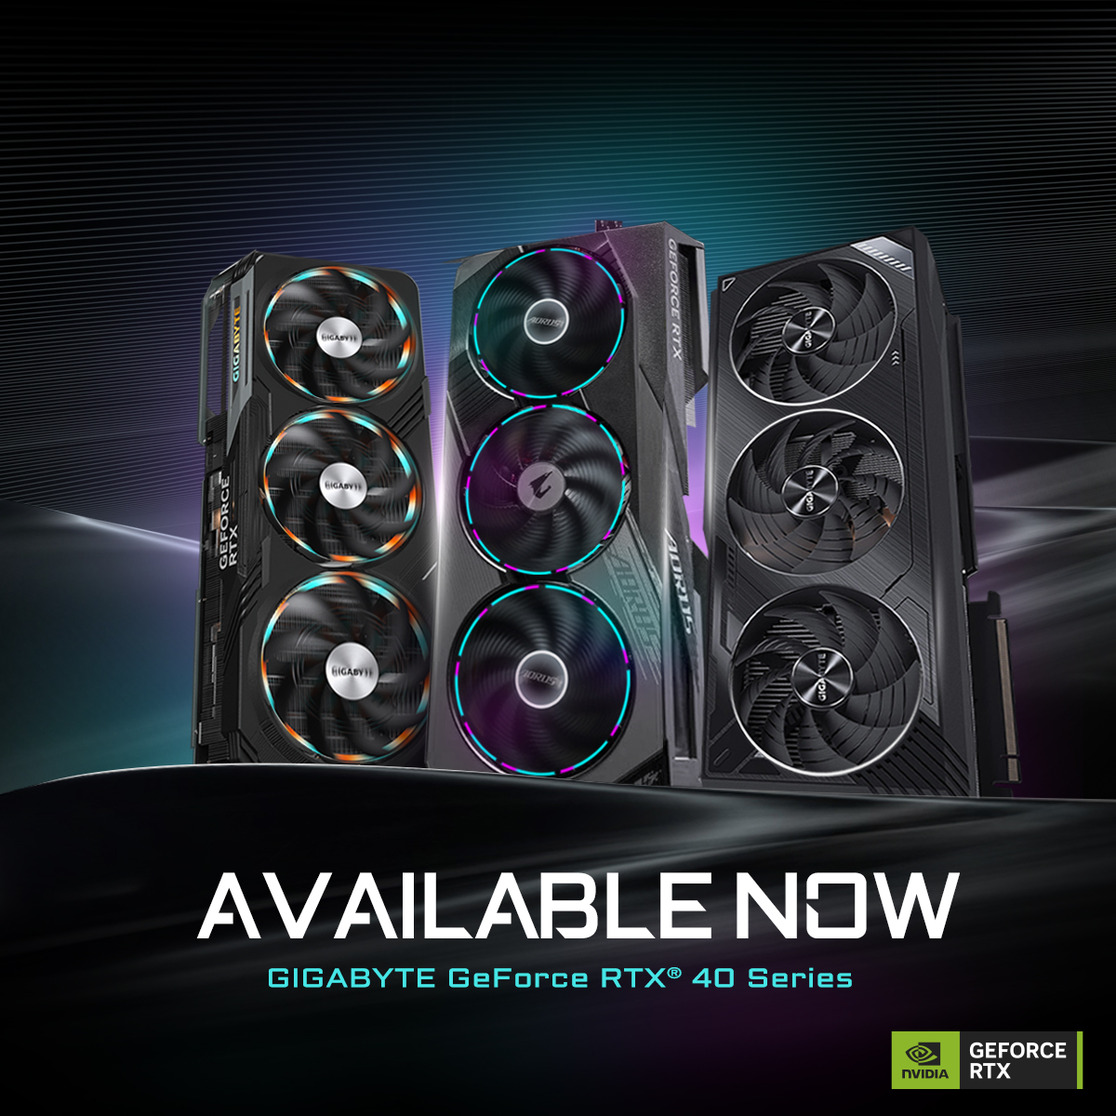 Breng je pc naar een hoger niveau met de RTX 40-serie GPU's!